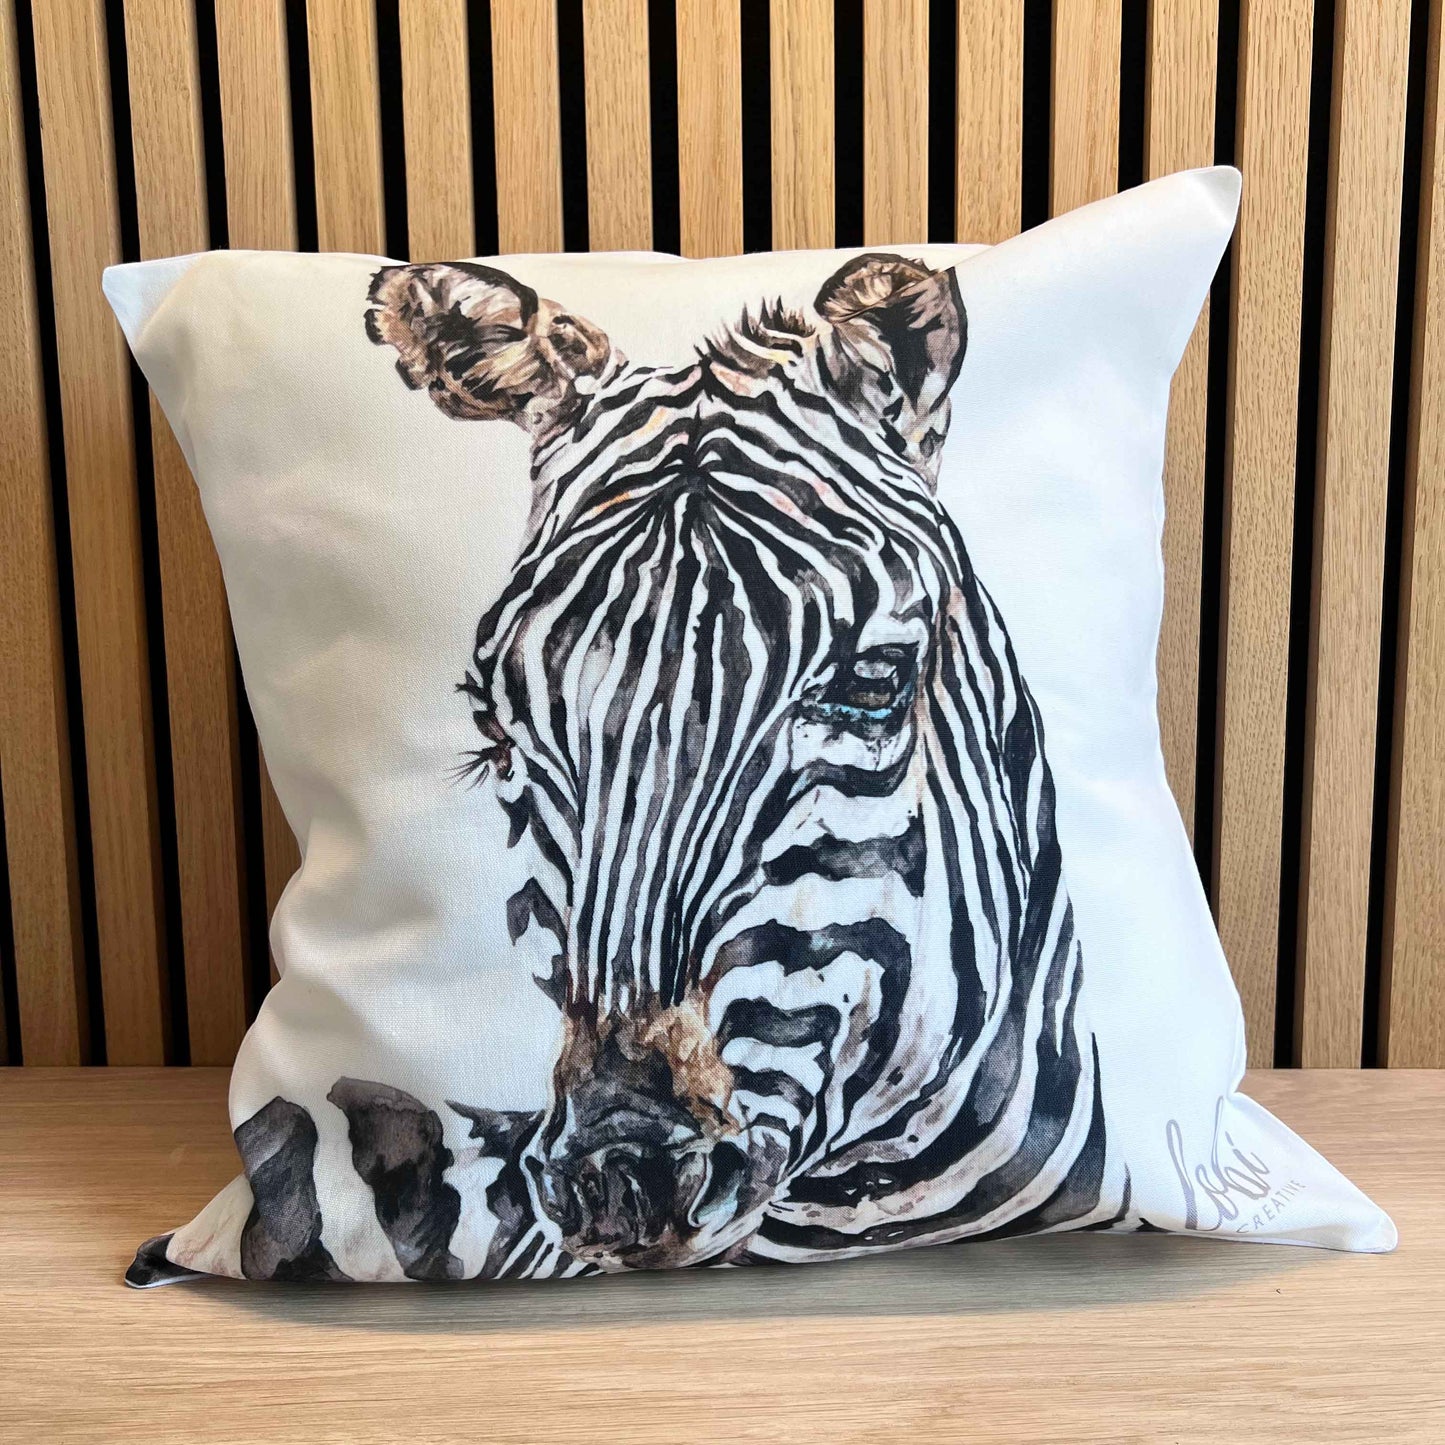 Zebra cushion cover